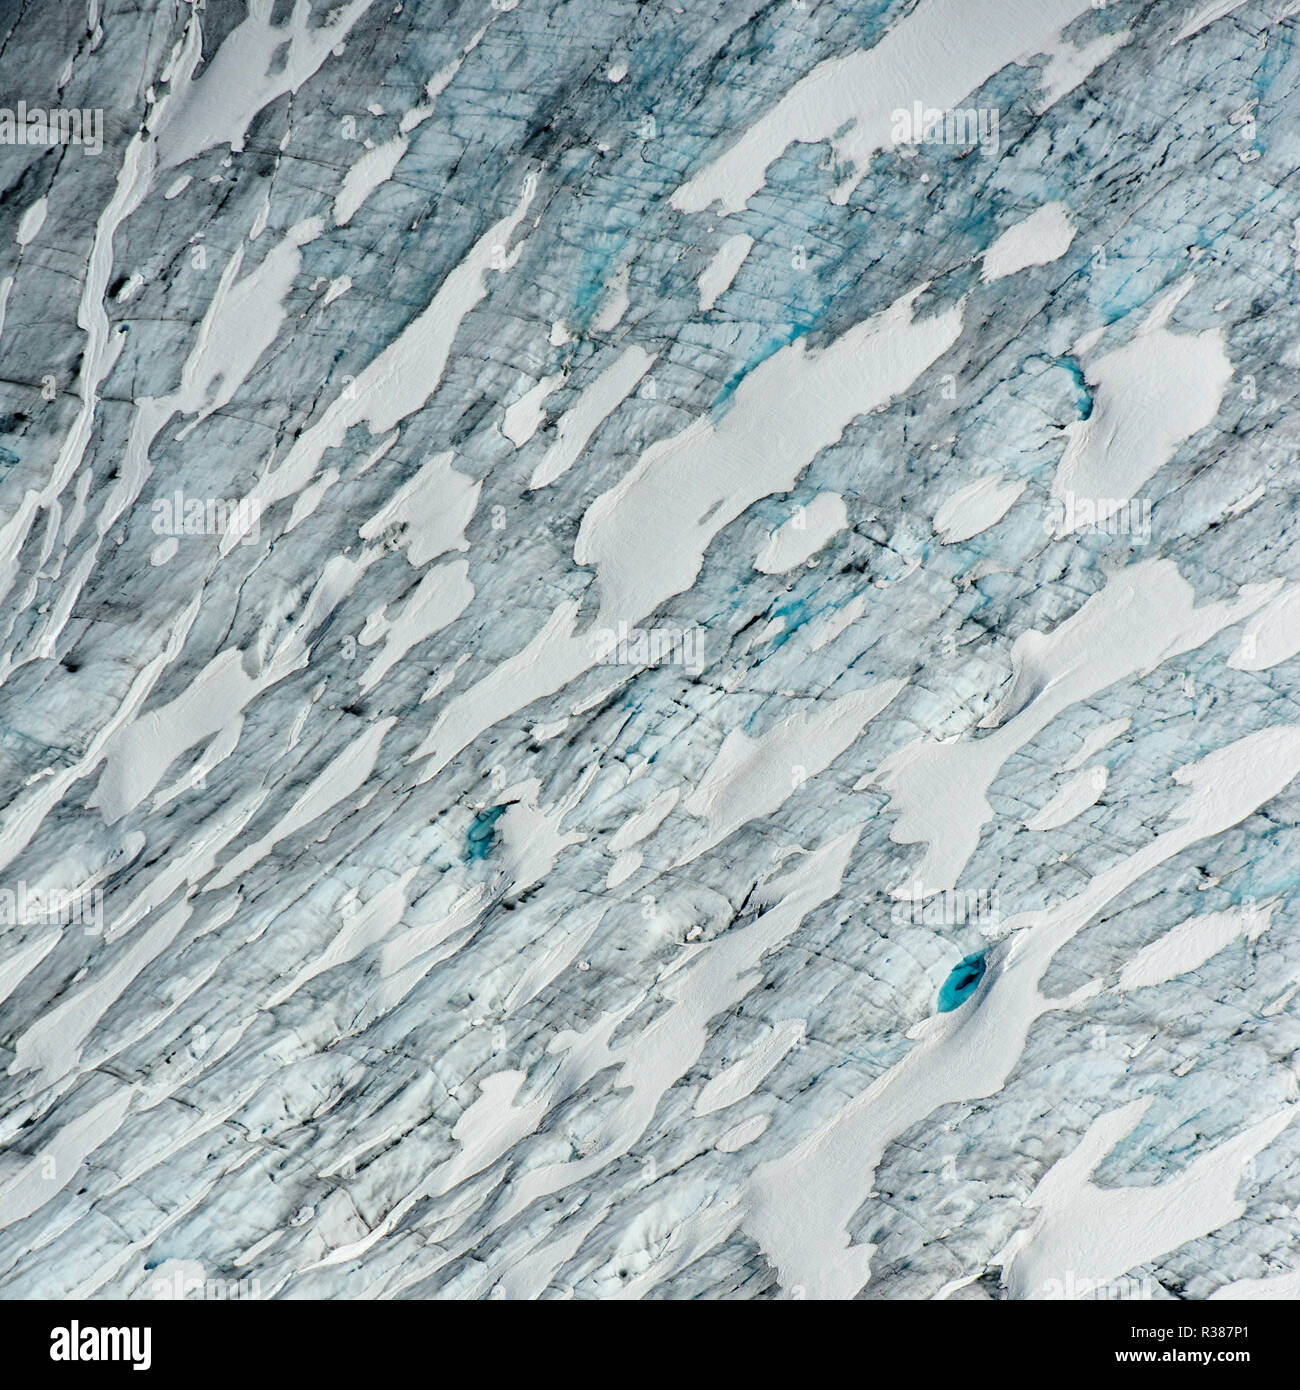 Variazioni sorprendenti di blu su questa immagine aerea di Tunsbergdalsbreen, Norvegia più lunga del braccio sul ghiacciaio del ghiaccio Jostedalsbreen cap. È Tunsbergdalsbreen Foto Stock